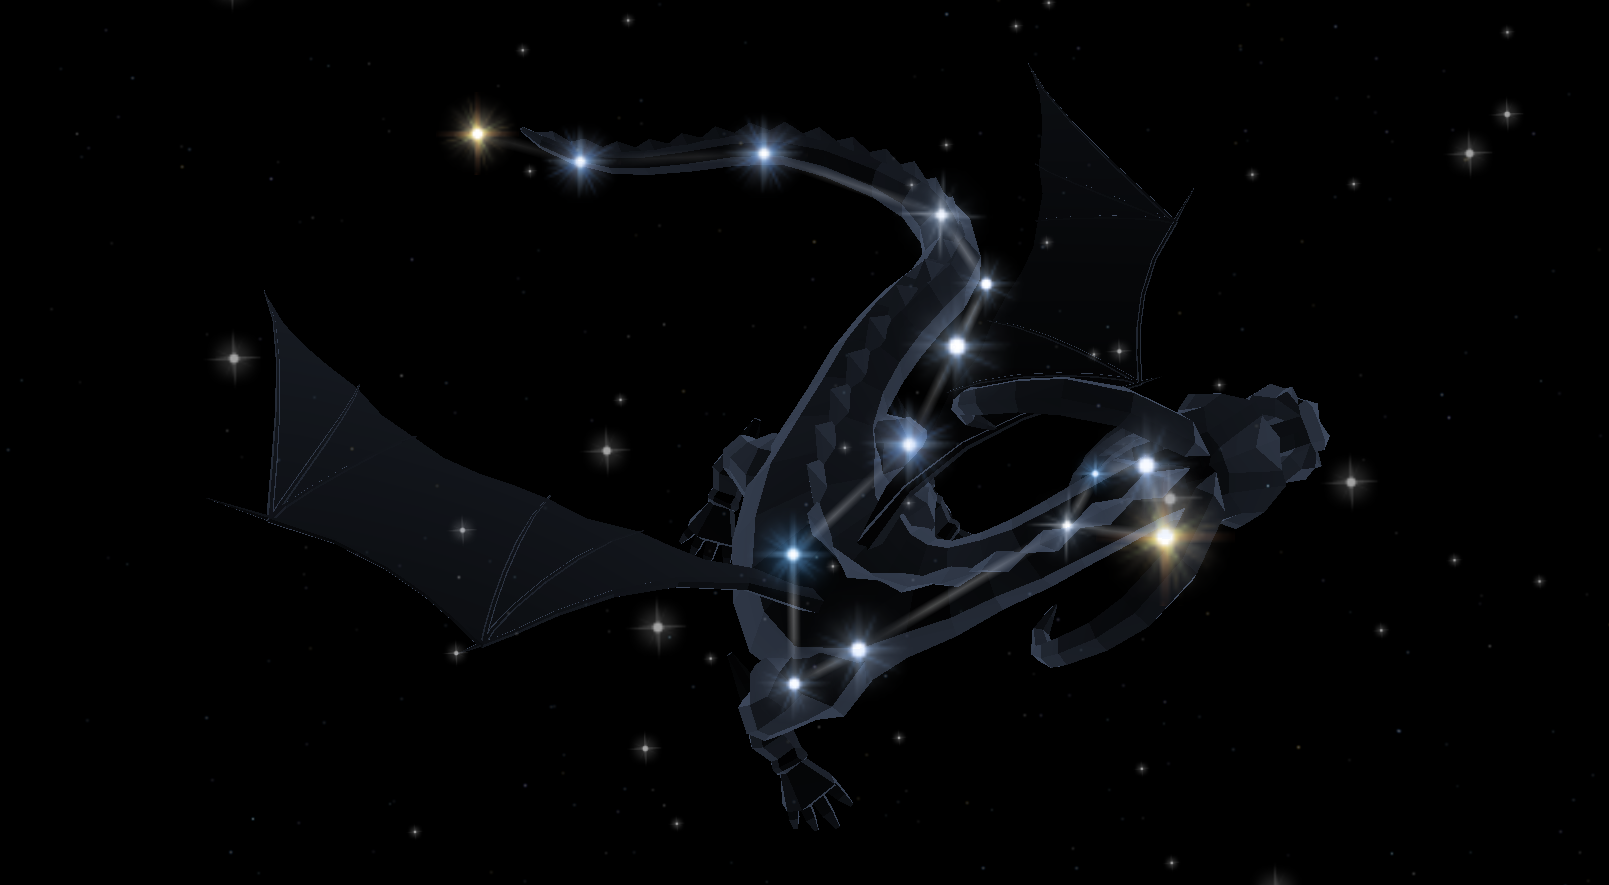 Caring star draco. Созвездие дракон Этамин. Созвездие Люциус. Астеризмы созвездия дракона. Самая яркая звезда в созвездии дракона.